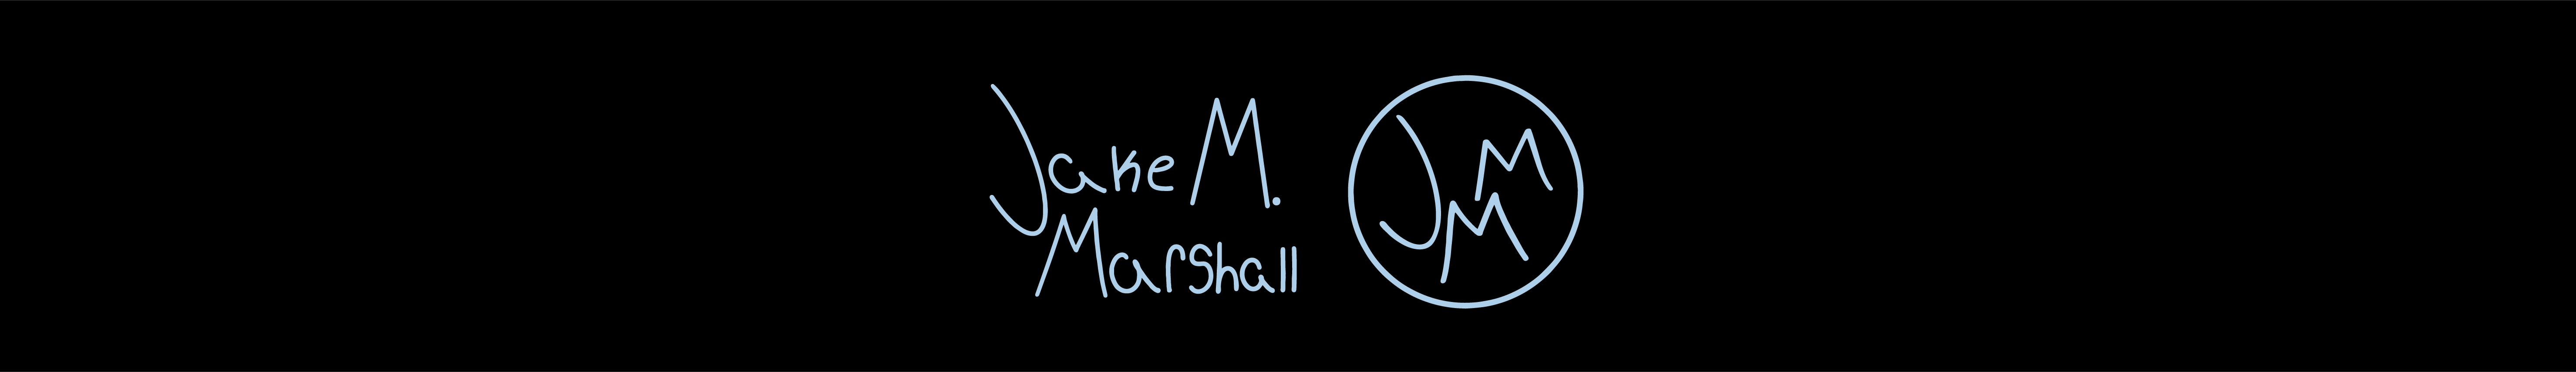 Jacob Marshall's profile banner